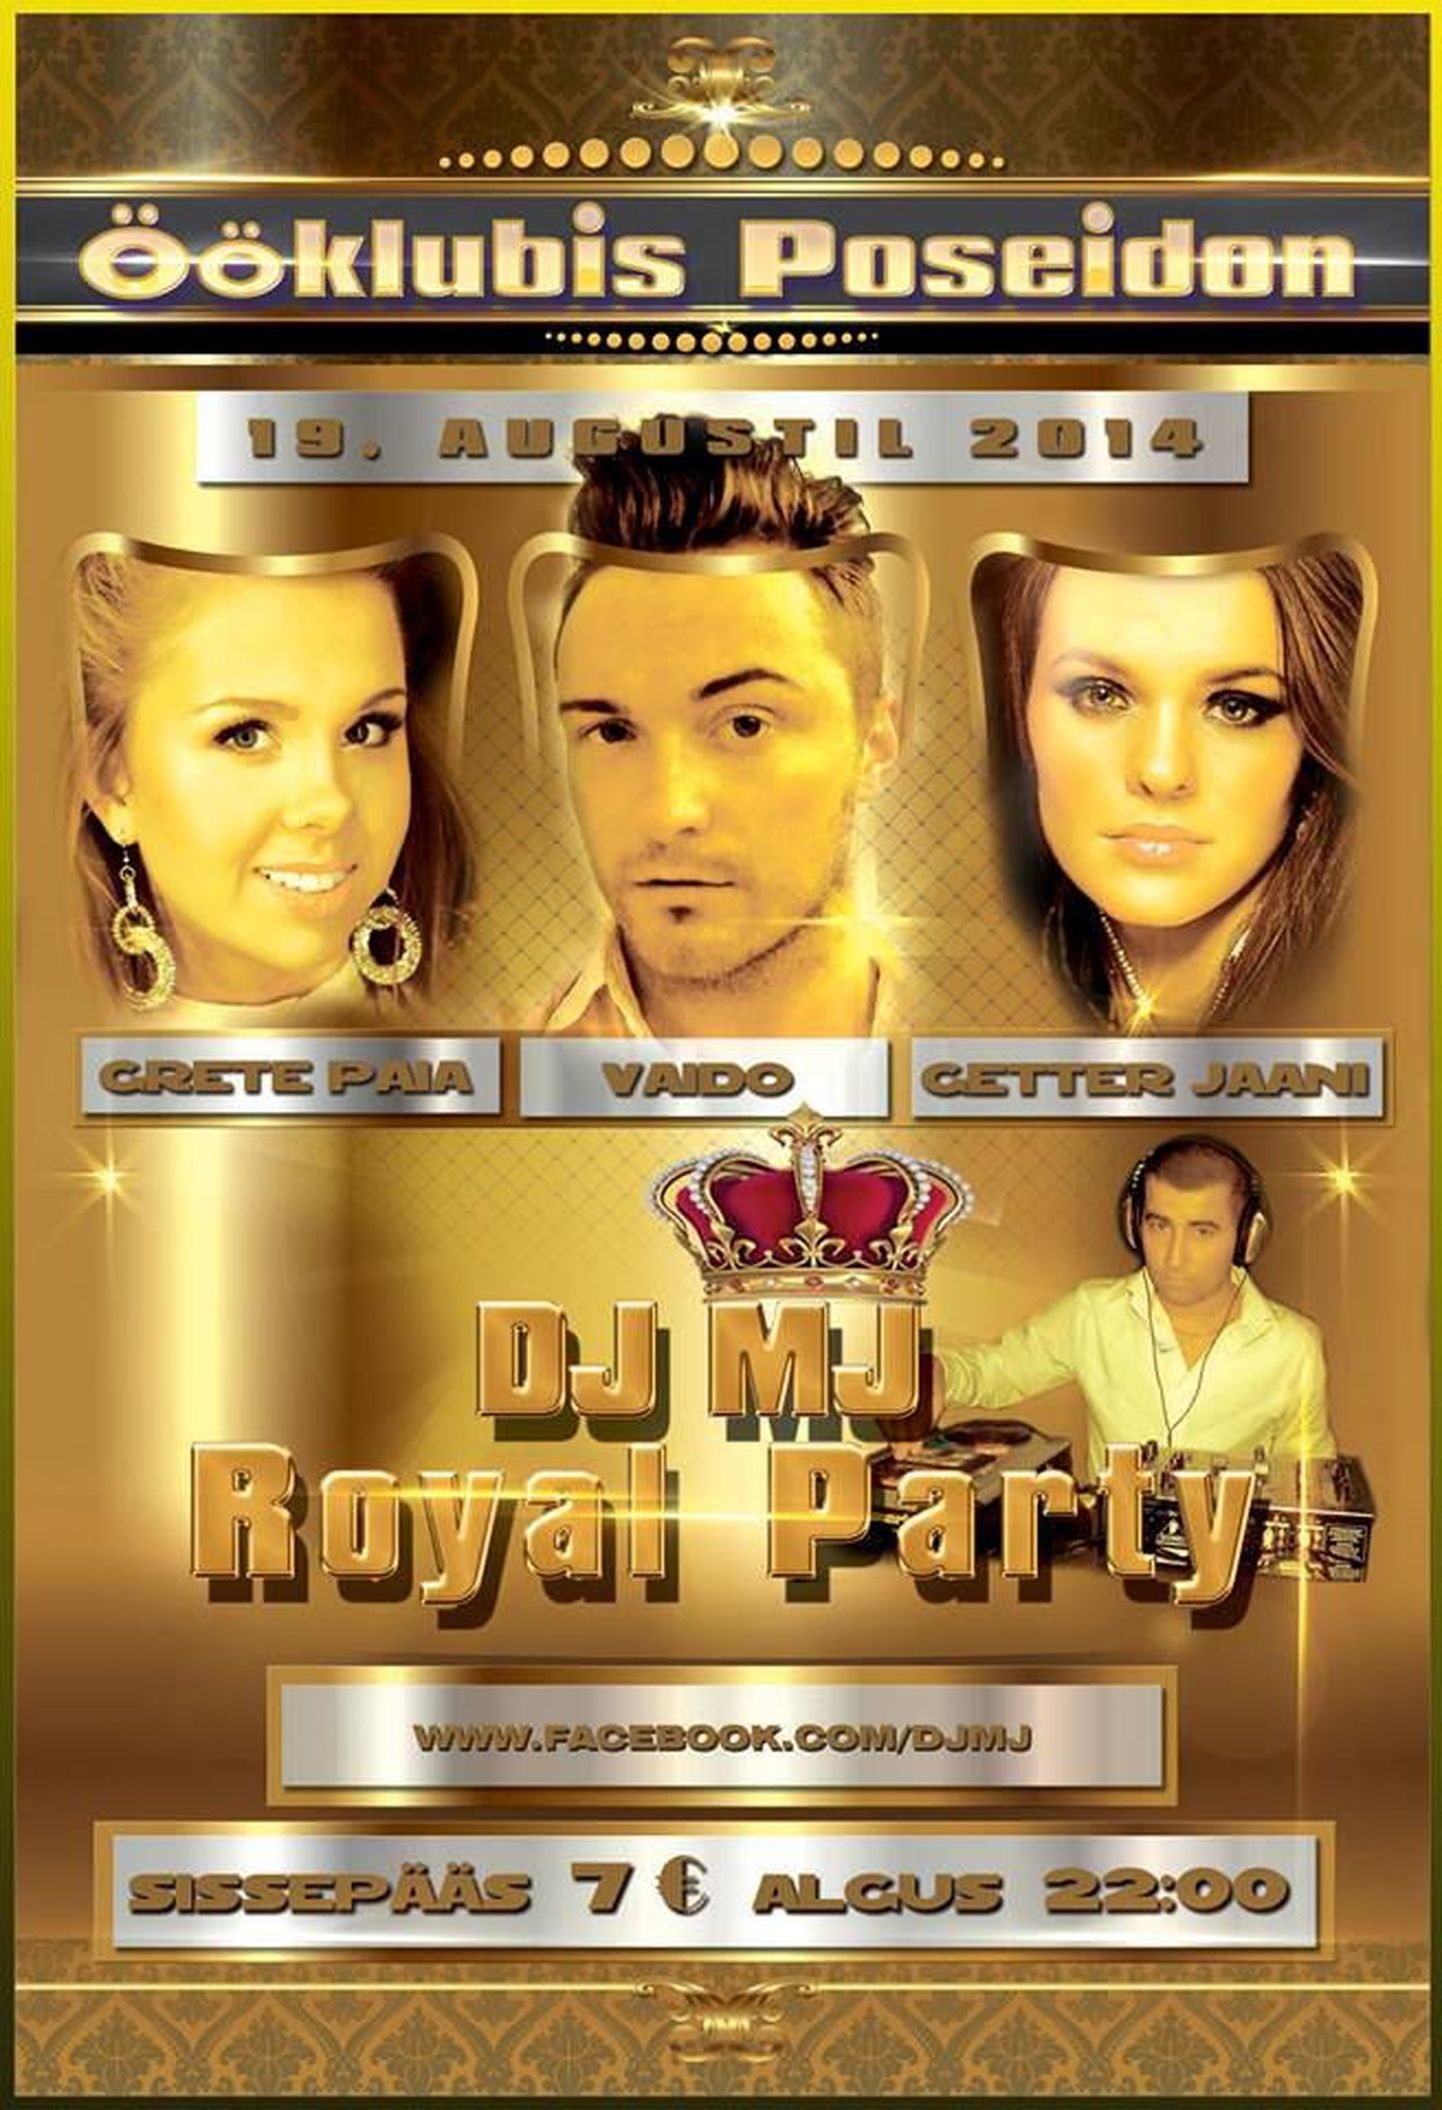 Royal Party ööklubis Poseidon - sünnipäevalaps DJ MJ lisaks astuvad lavalaudadele ka staarlauljad Getter Jaani, Vaido Neigaus ja Grete Paia!